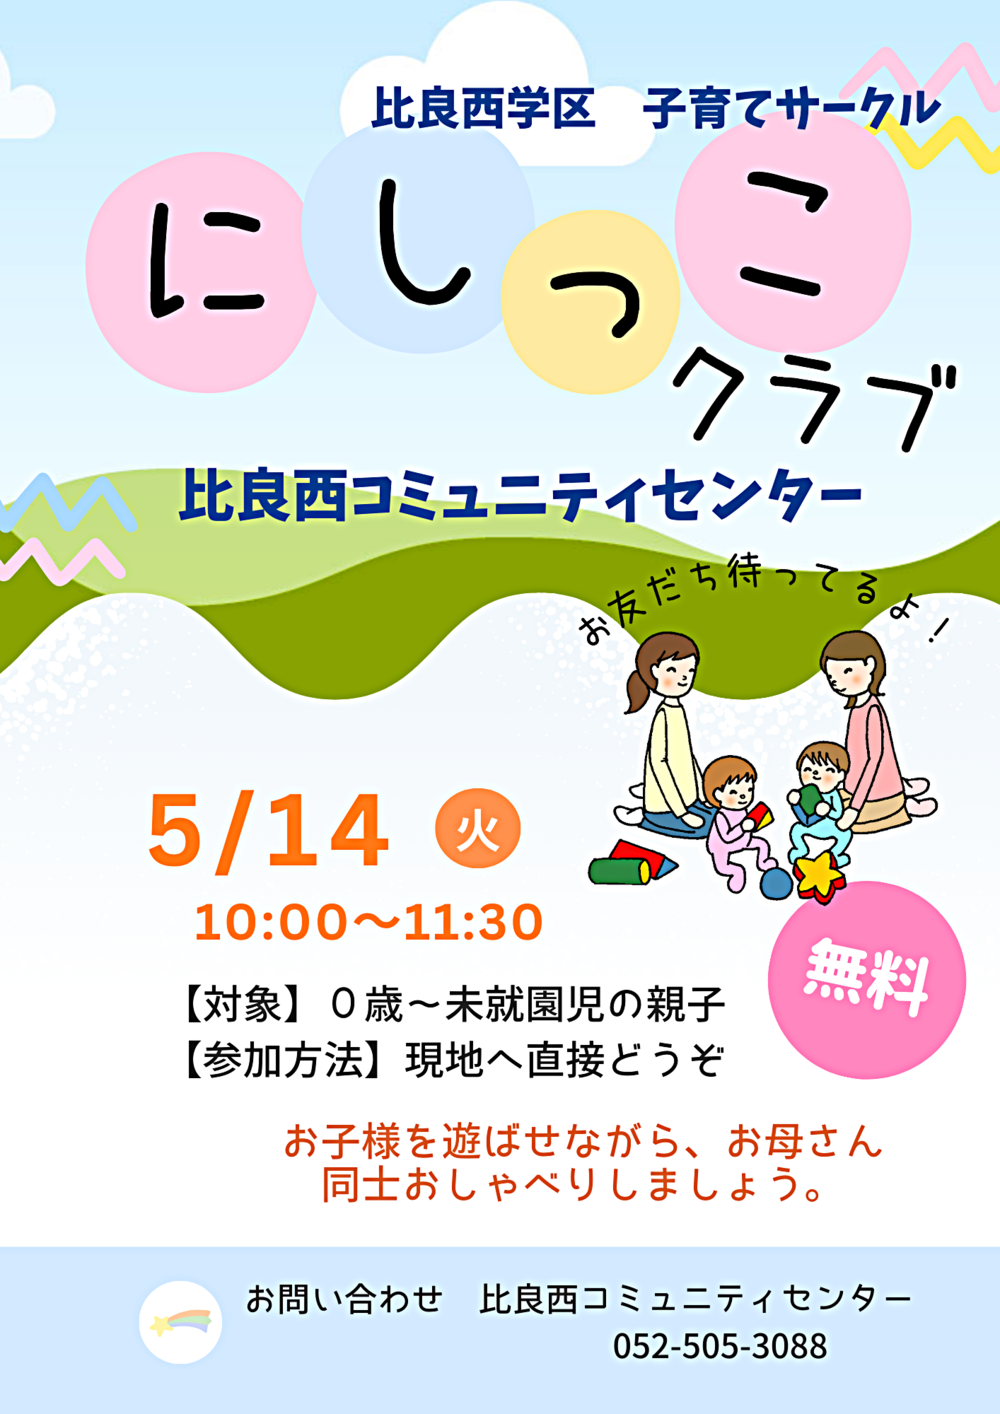 Círculo de cuidados infantis do distrito escolar de Hira Nishi “Nishikko Club”